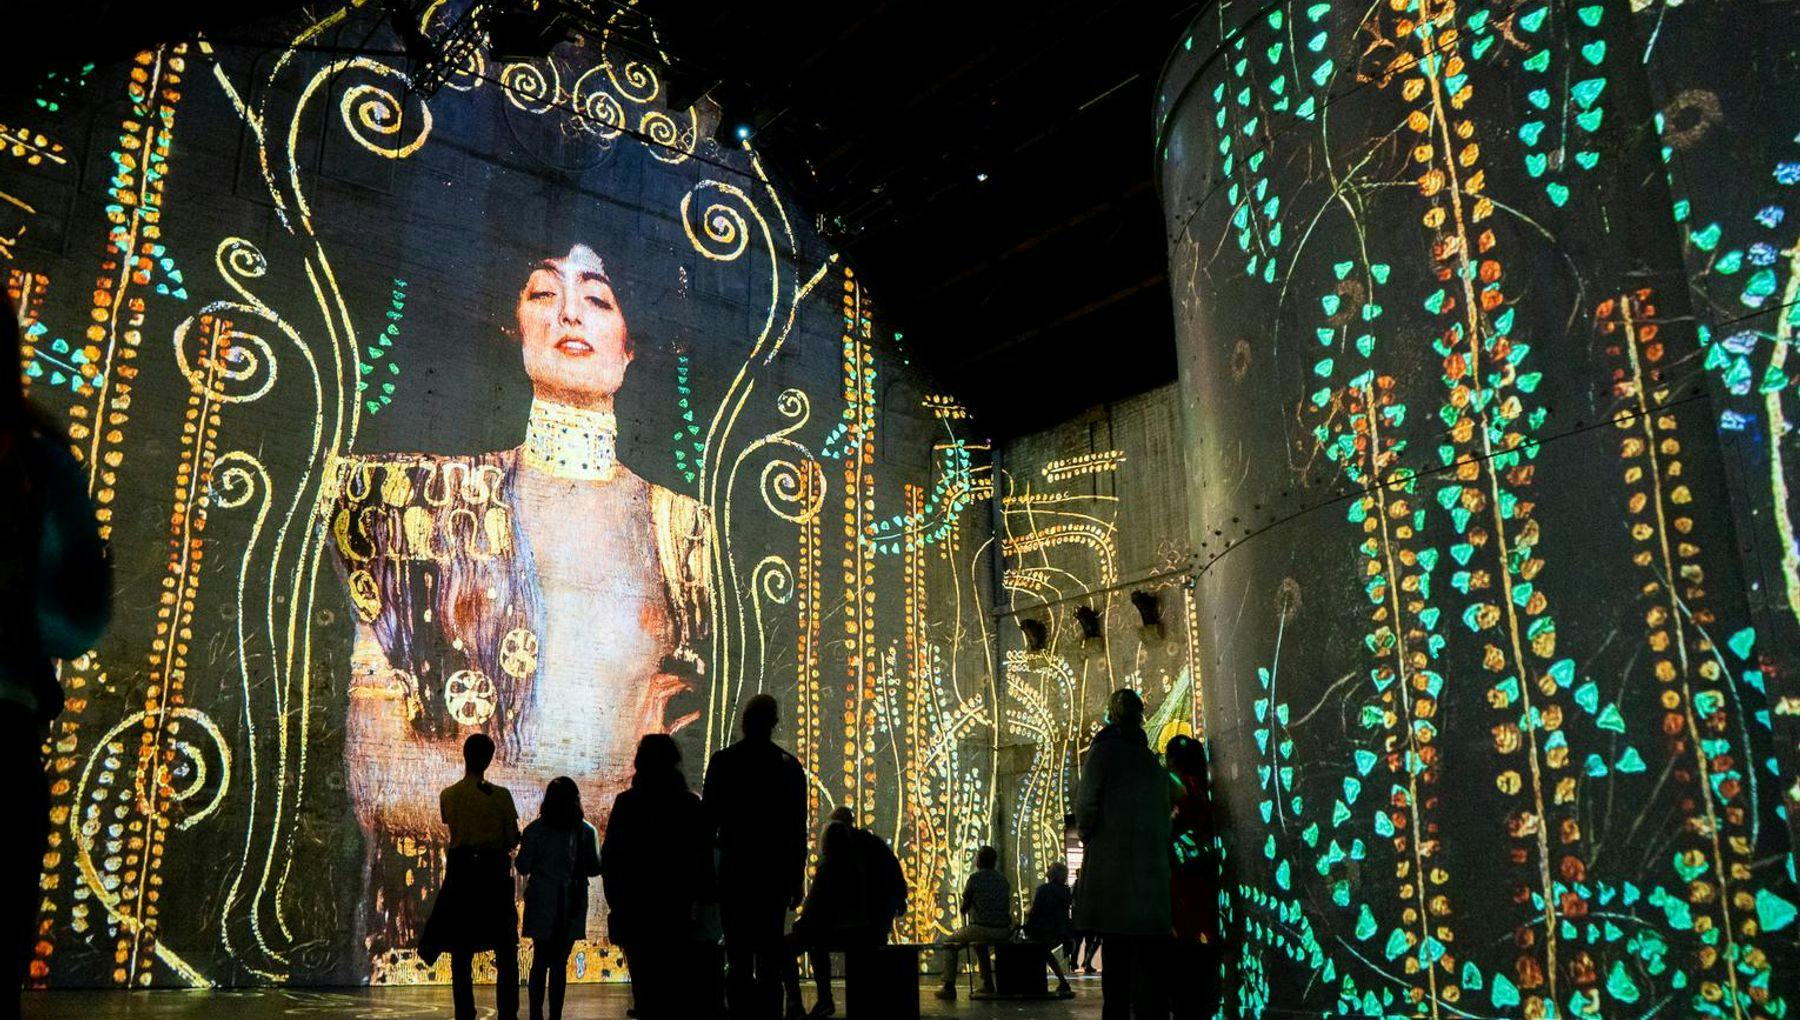 Fabrique des Lumières - Gustav Klimt audiovisual exhibition.